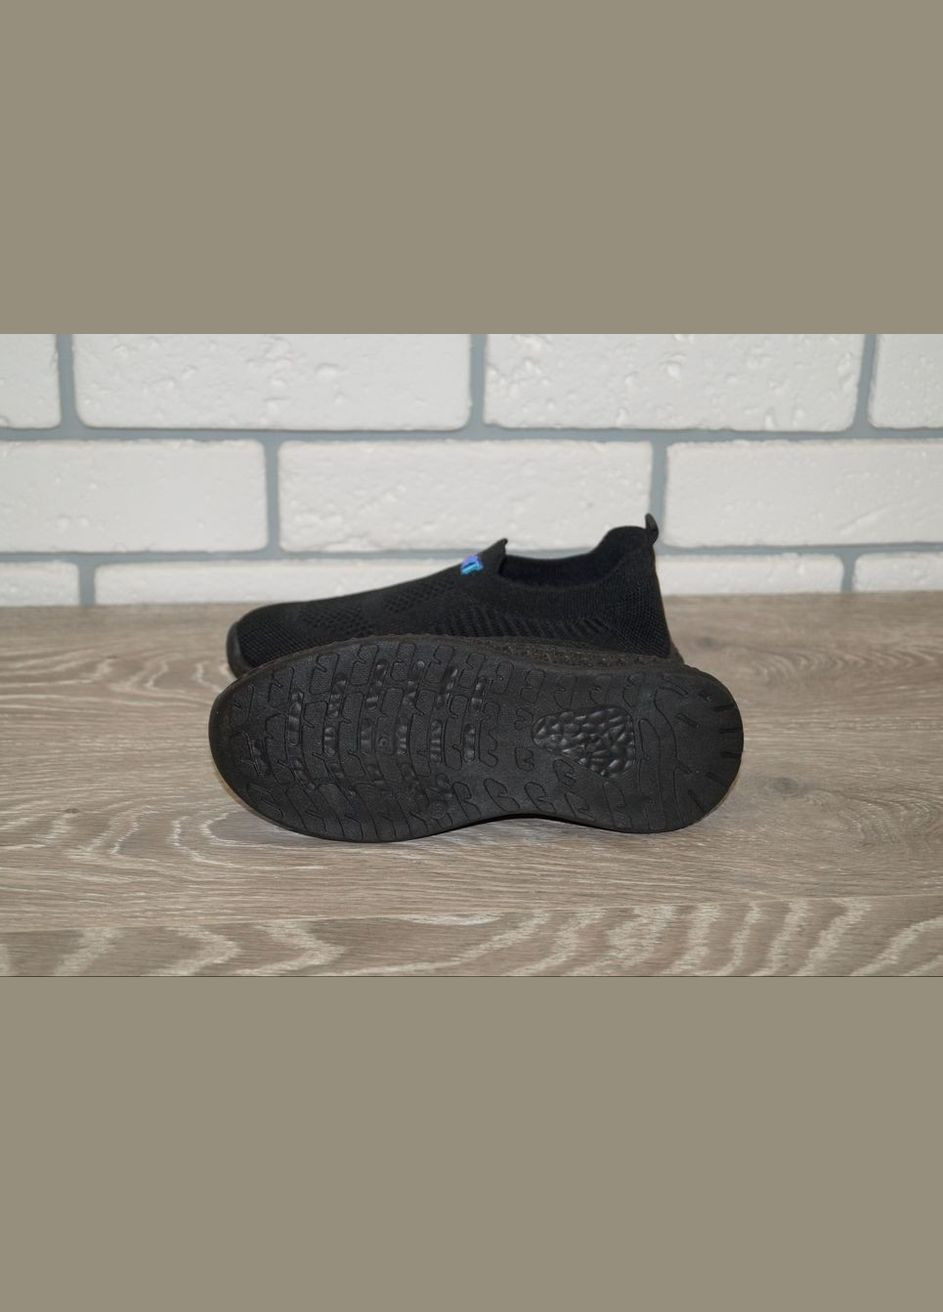 Черные демисезонные кроссовки для мальчика текстильные черные Vesnoe